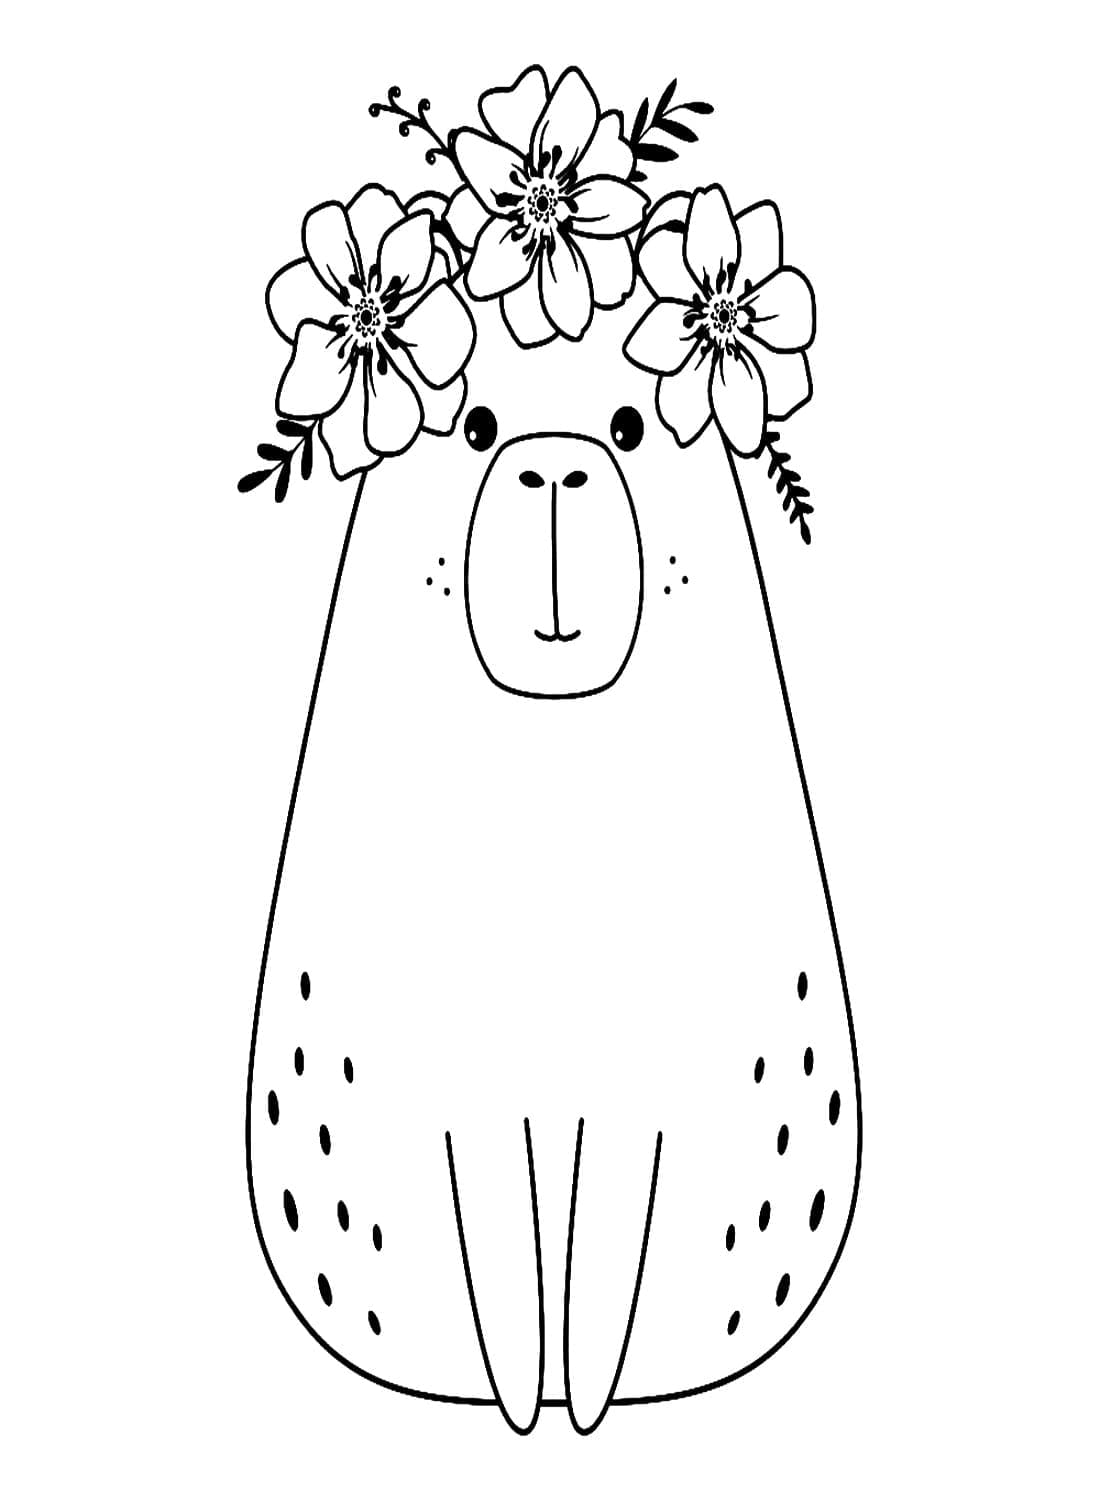 Adorable Capybara coloring page